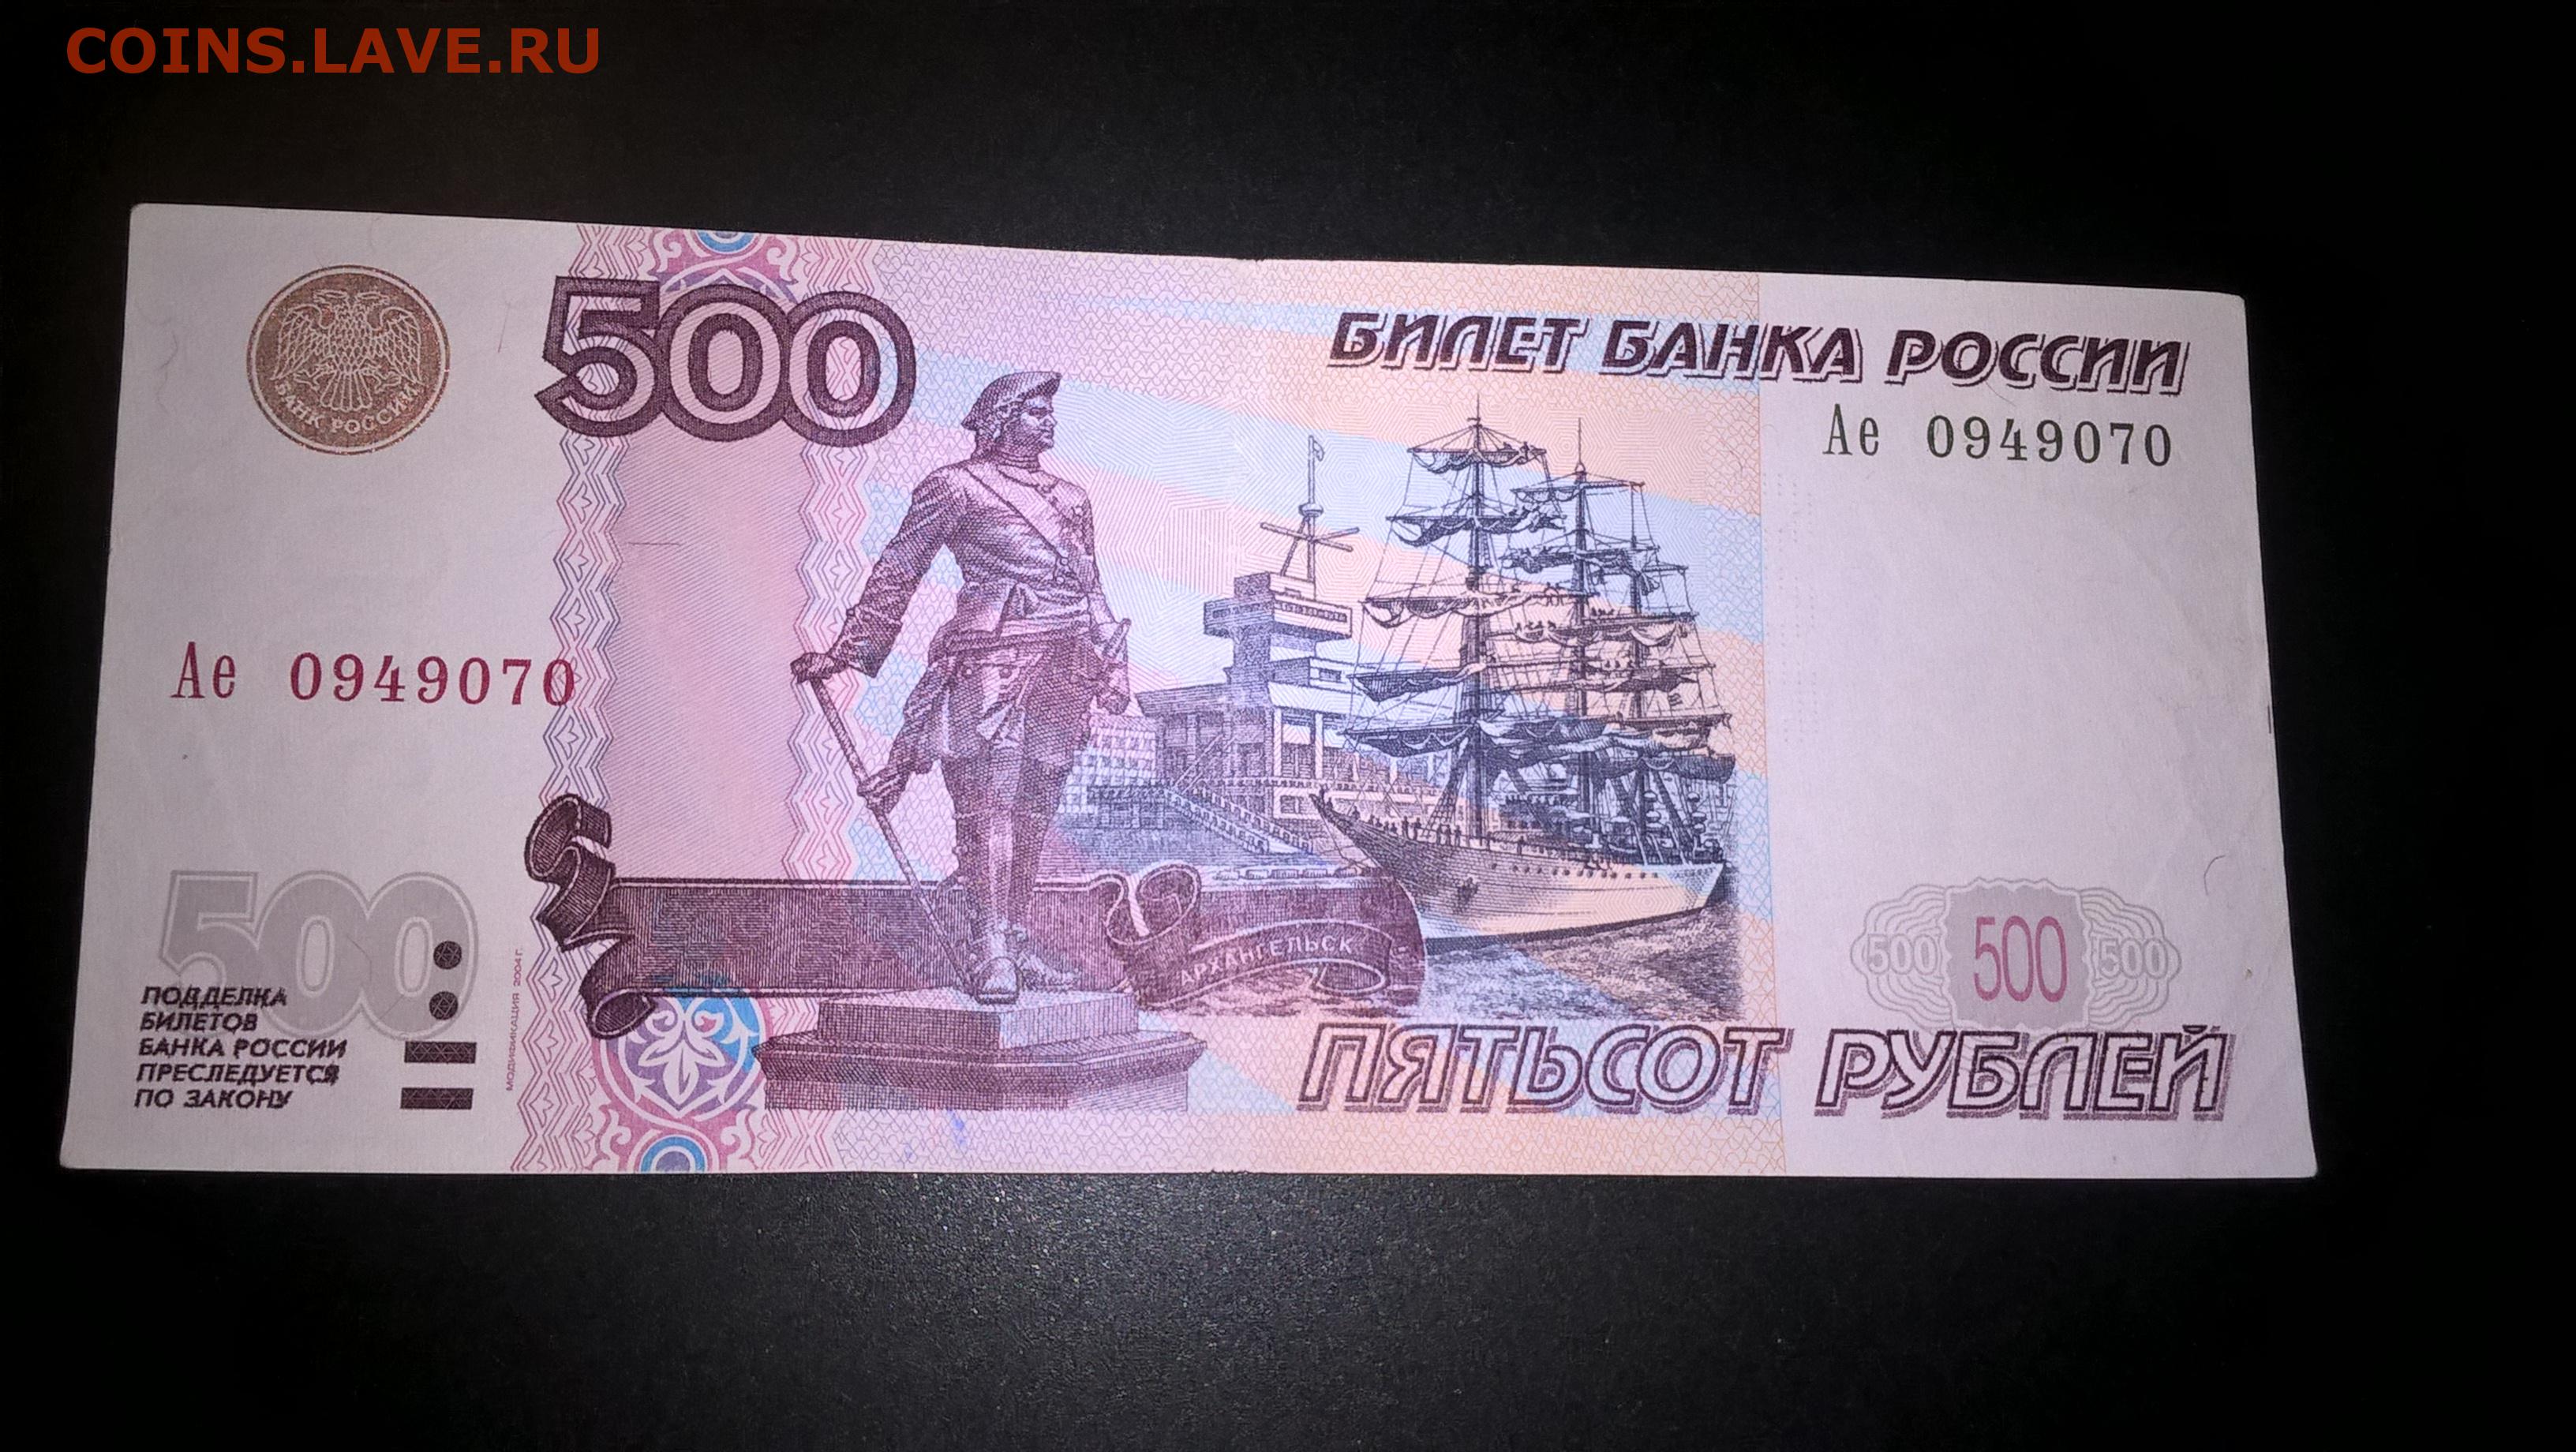 Н 500 рублей. 500 Рублей 1997. Билет банка России 500 рублей. Пятьсот рублей 1997. Банкноты с автомобилями.